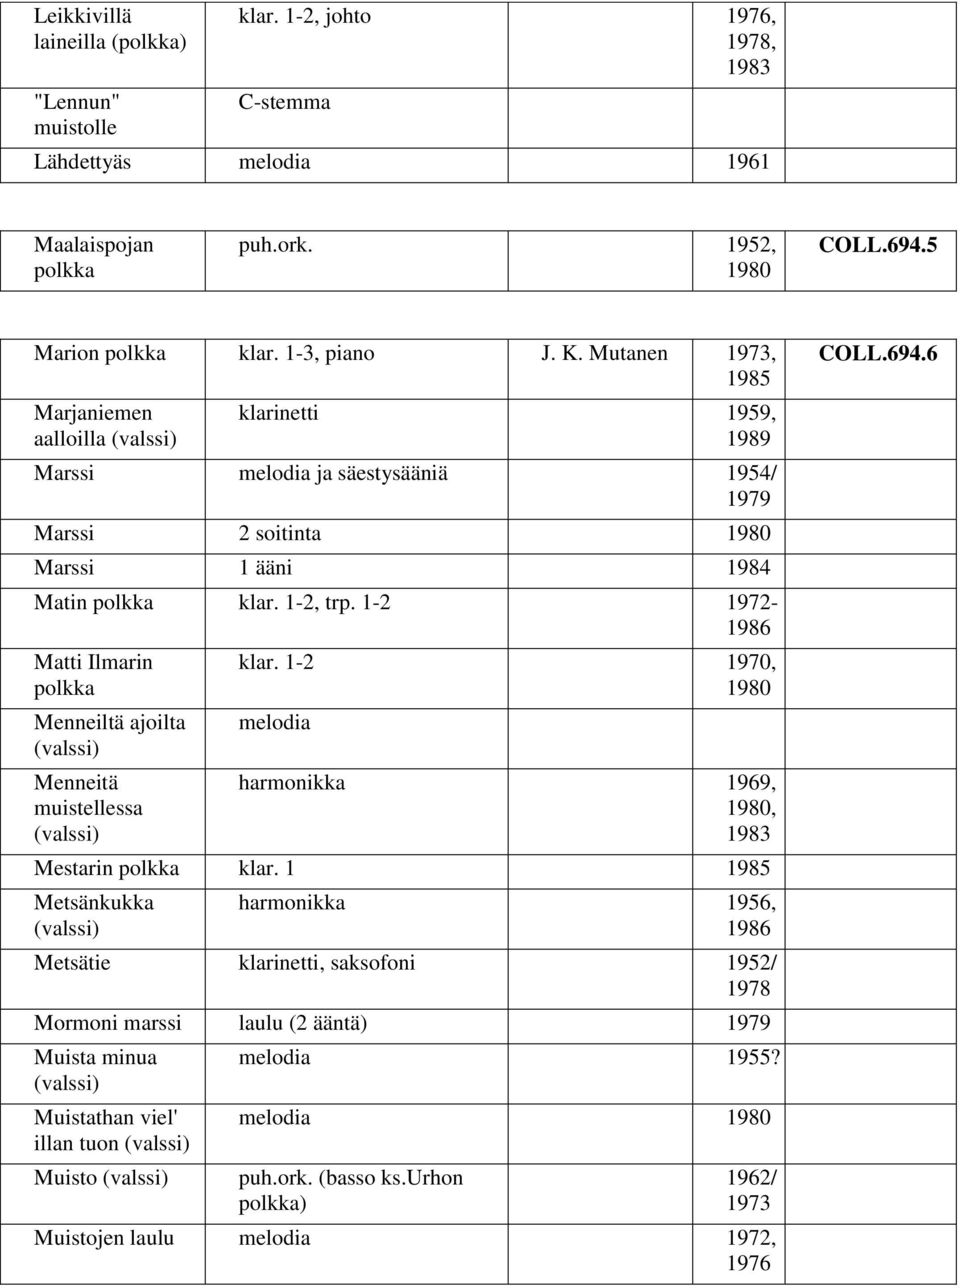 1-2 1972-1986 Matti Ilmarin polkka Menneiltä ajoilta (valssi) Menneitä muistellessa (valssi) klar. 1-2 1970, 1980 harmonikka 1969, 1980, 1983 Mestarin polkka klar.